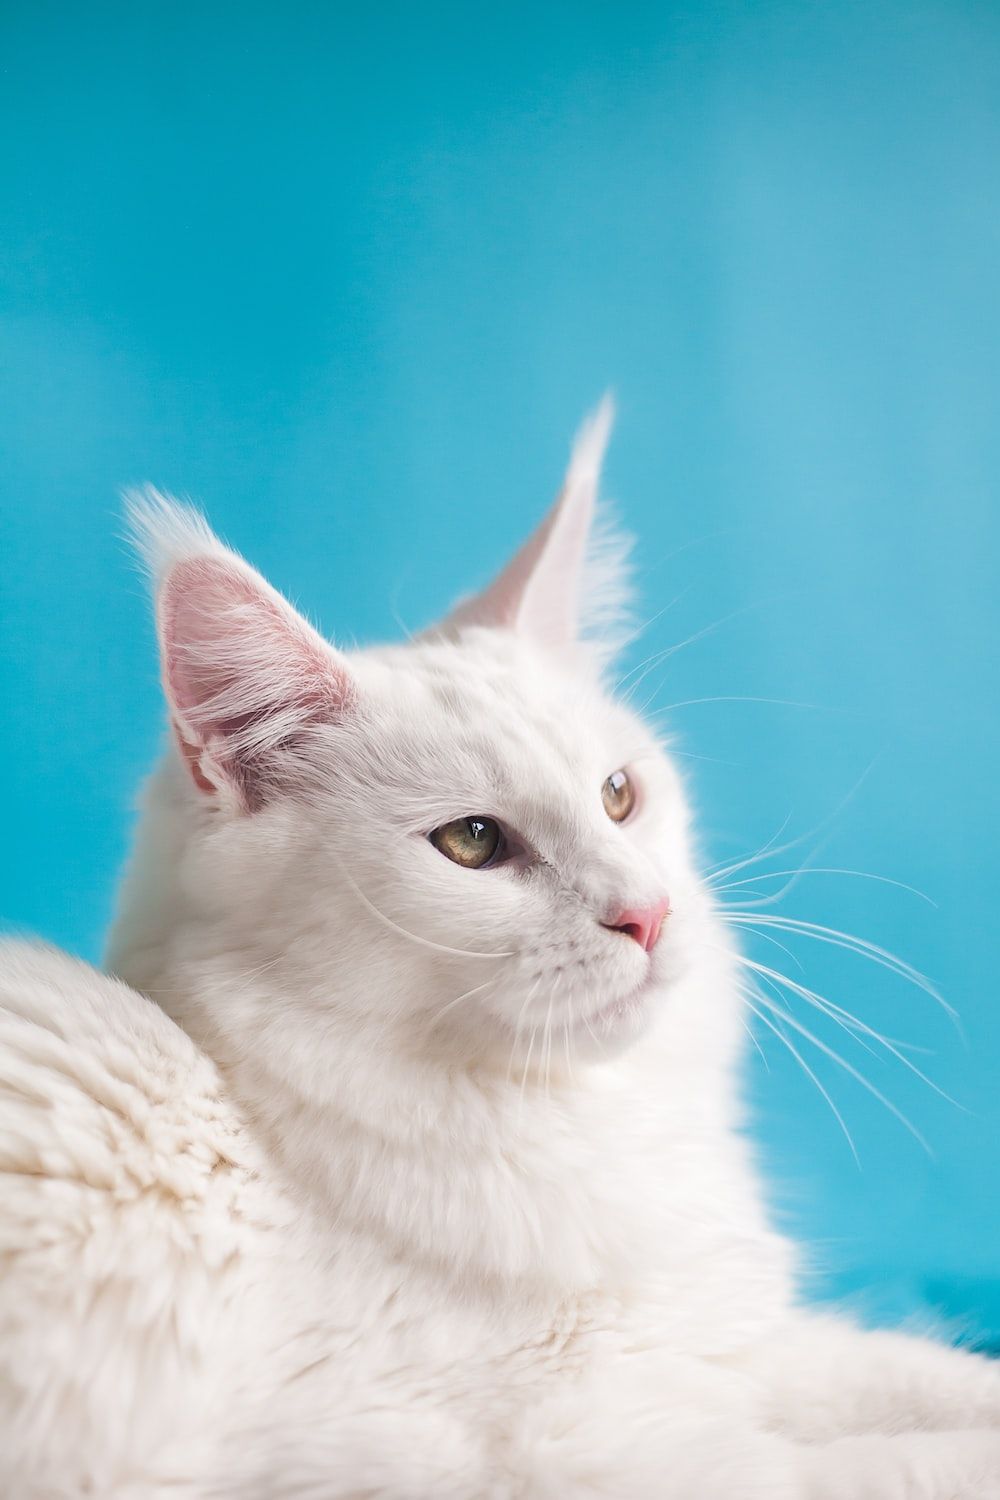  Katzen Hintergrundbild 1000x1500. Foto zum Thema Weiße katze auf weißem textil